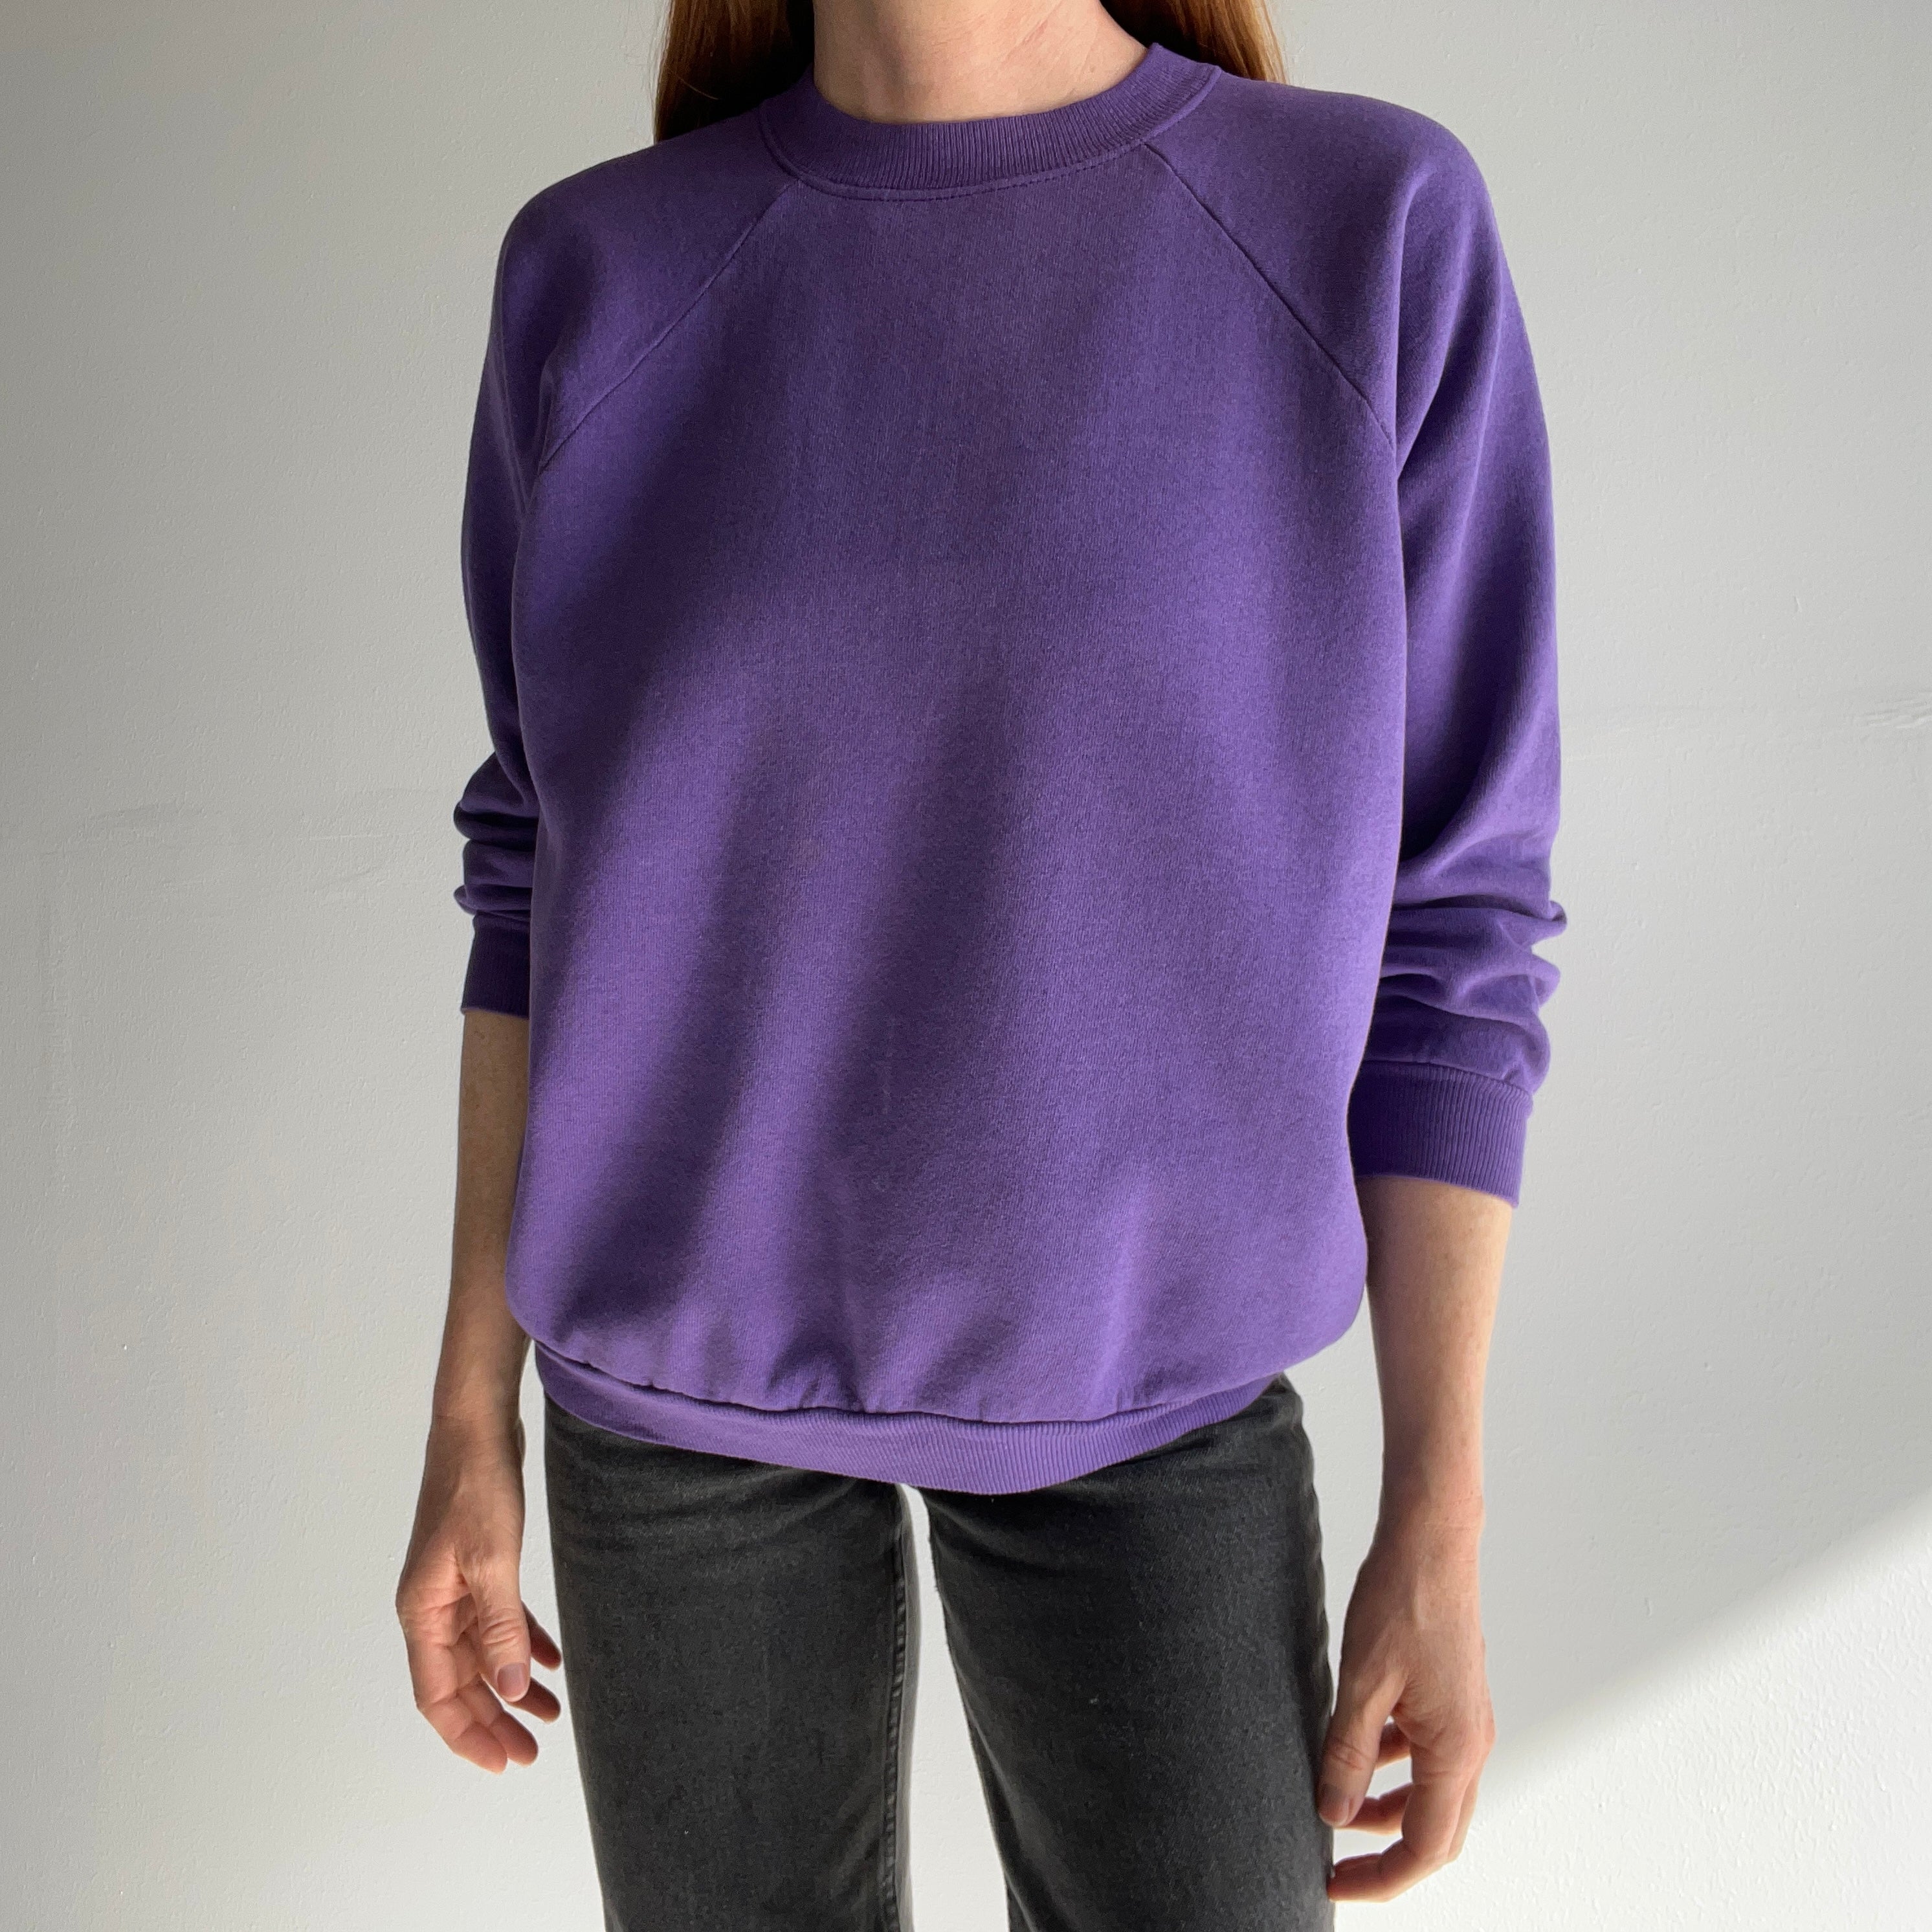 Lands' End Serious Sweats women's small (6-8) purple raglan sleeve  sweatshirt